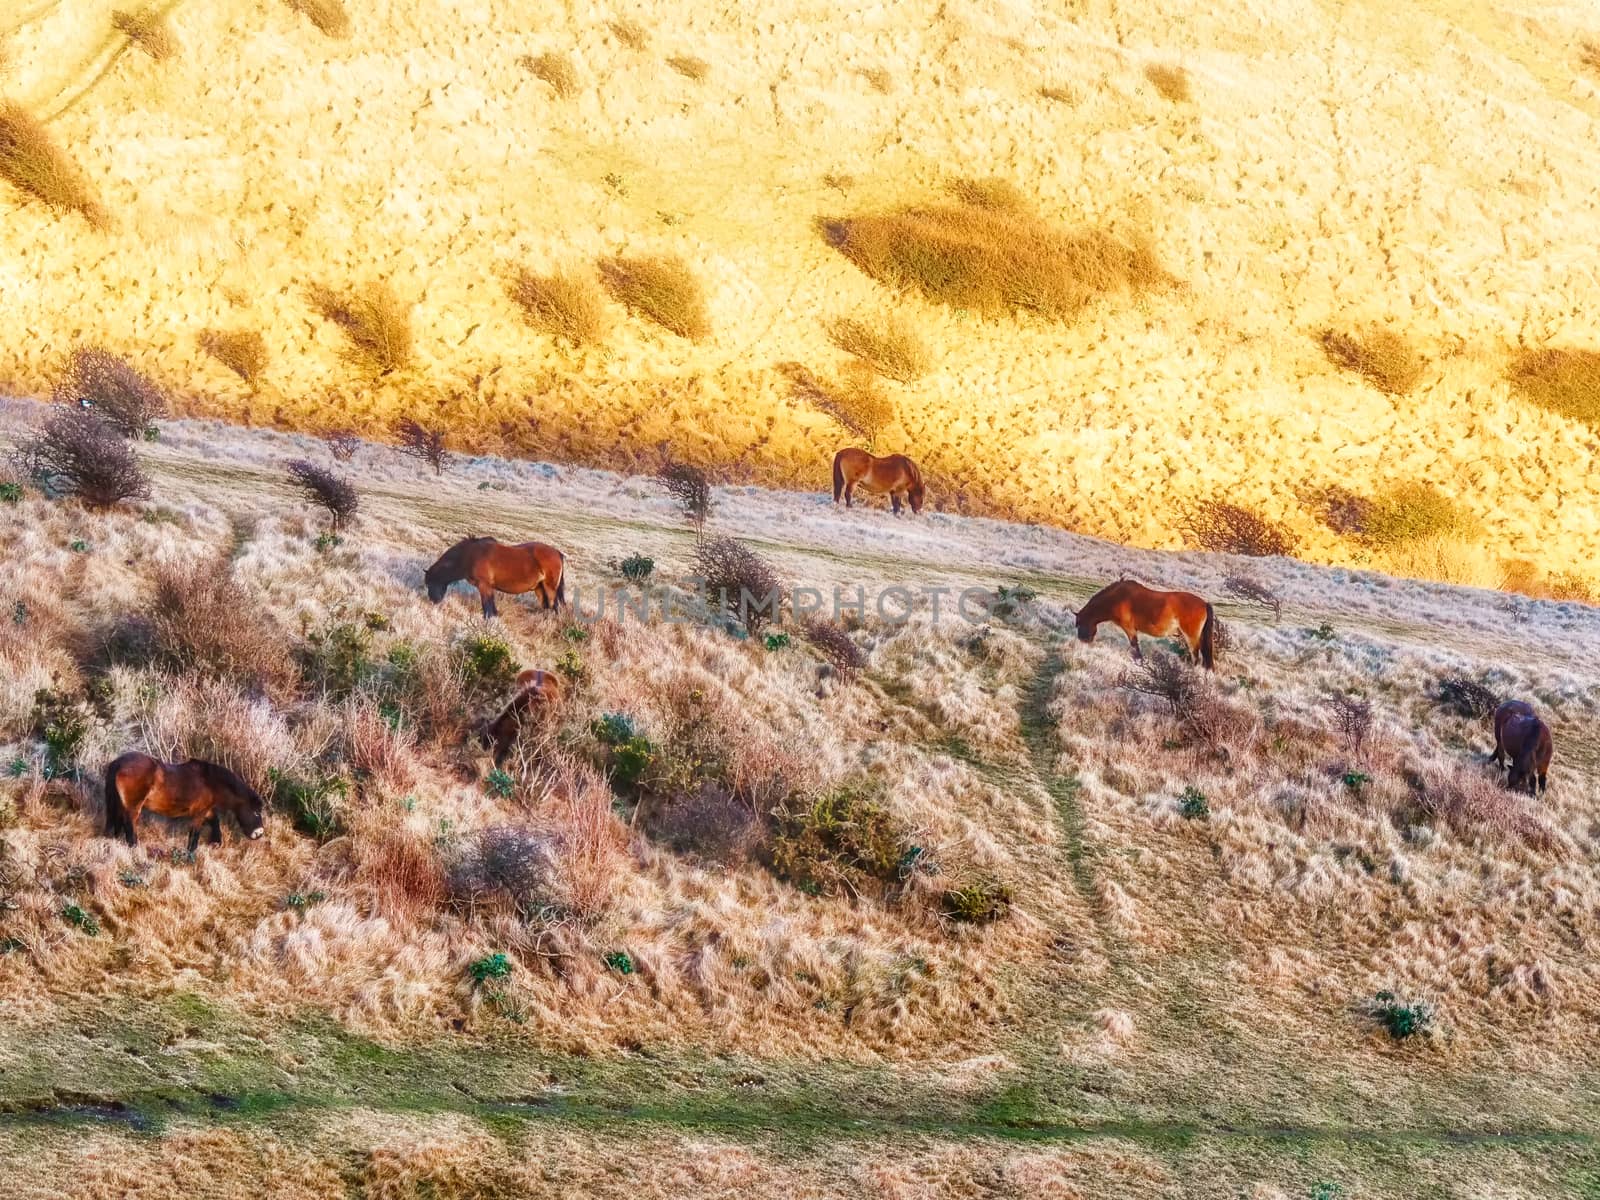 Horses Eating on a Field by PhotoLondonUK